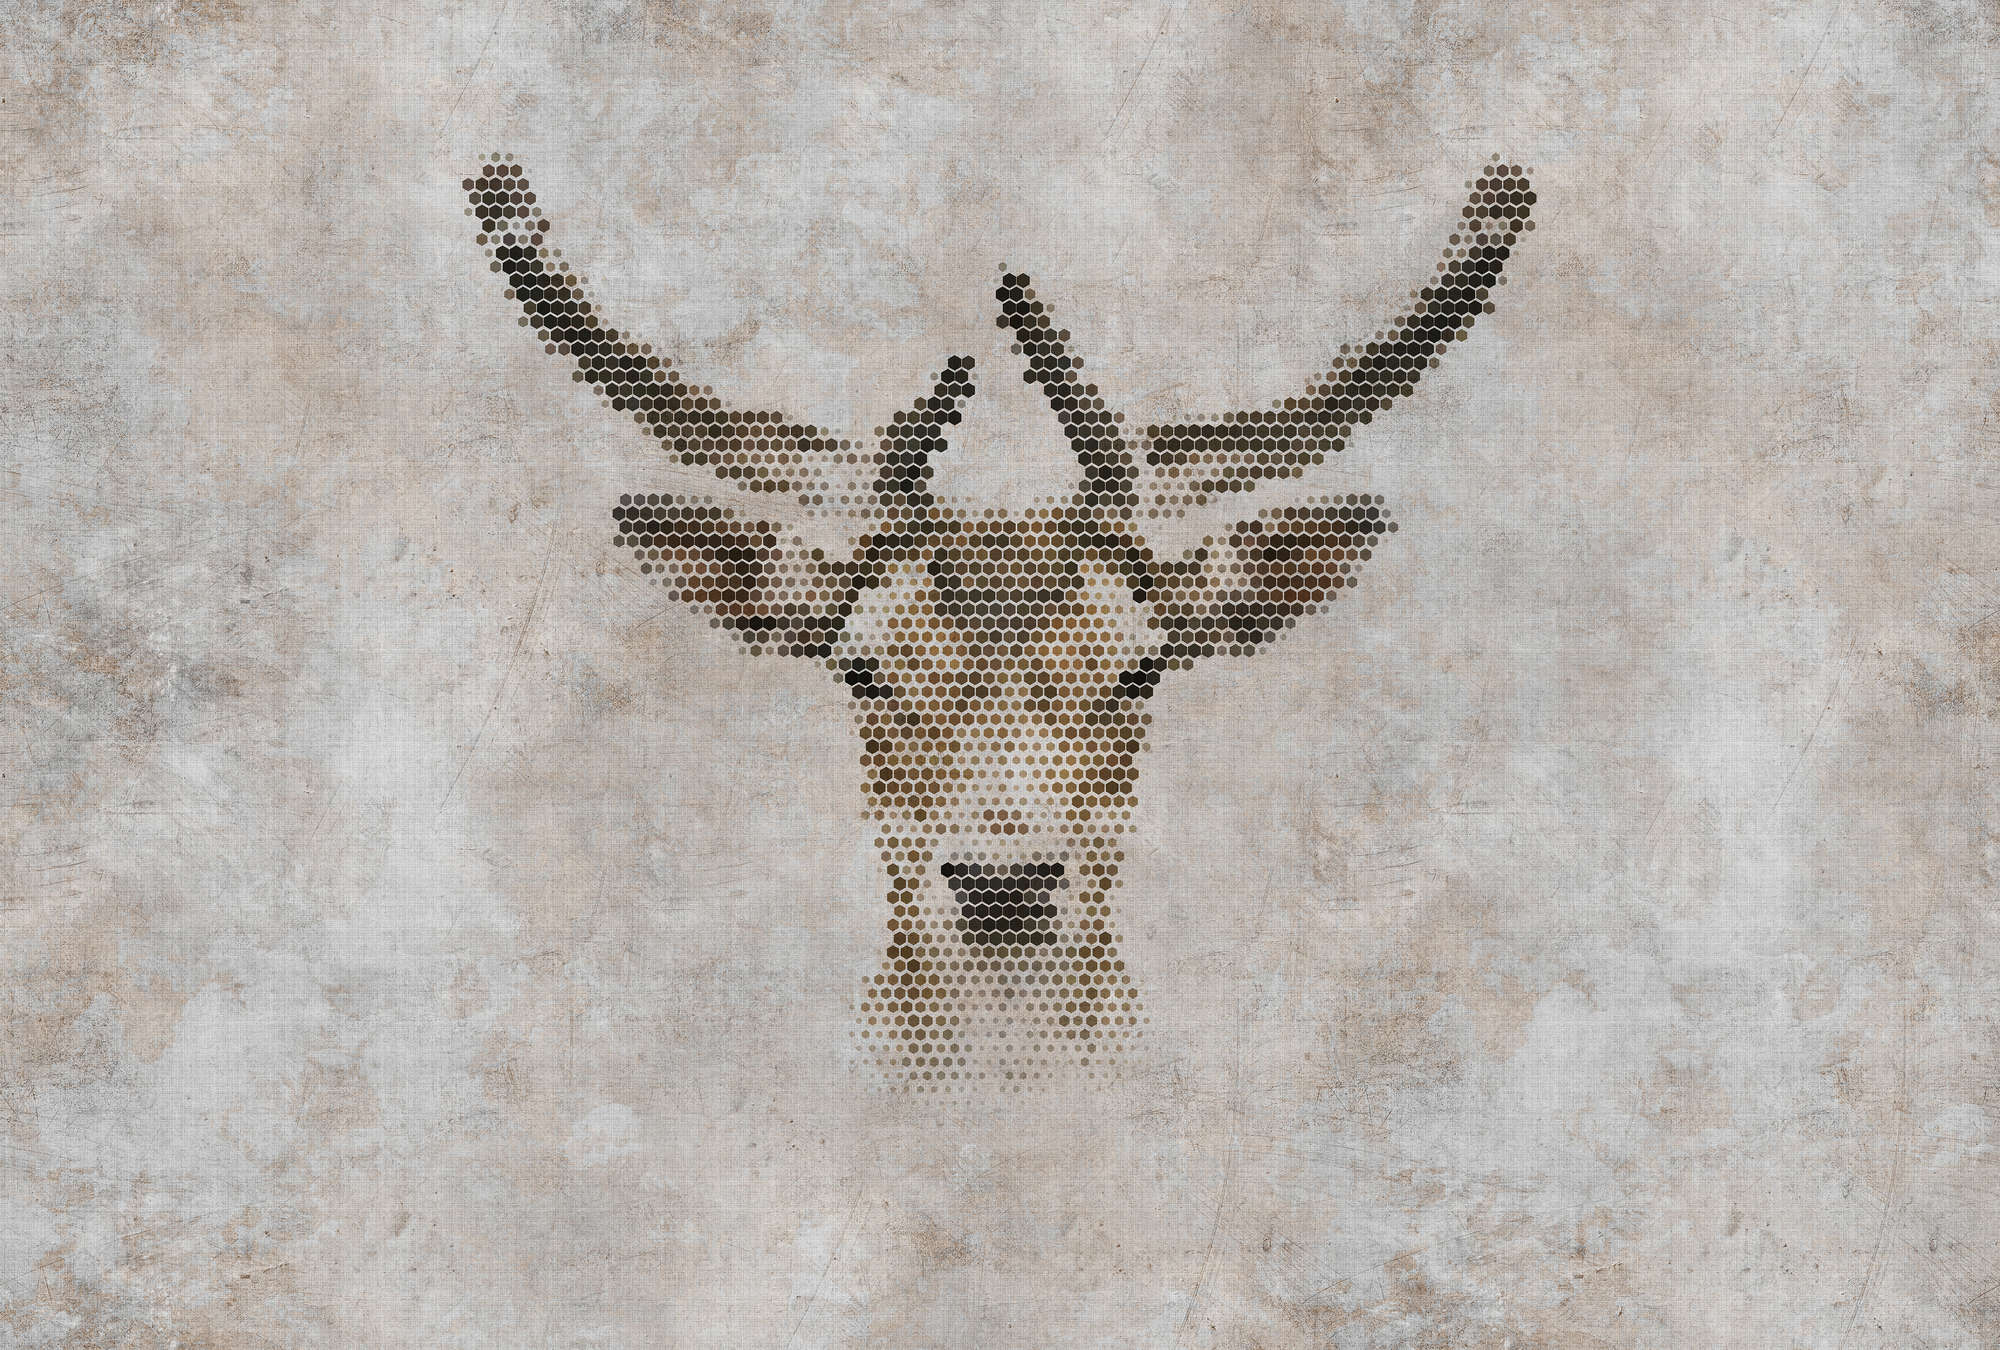             Big three 3 - digital print wallpaper, concrete look with deer in natural linen structure - beige, brown | premium smooth fleece
        